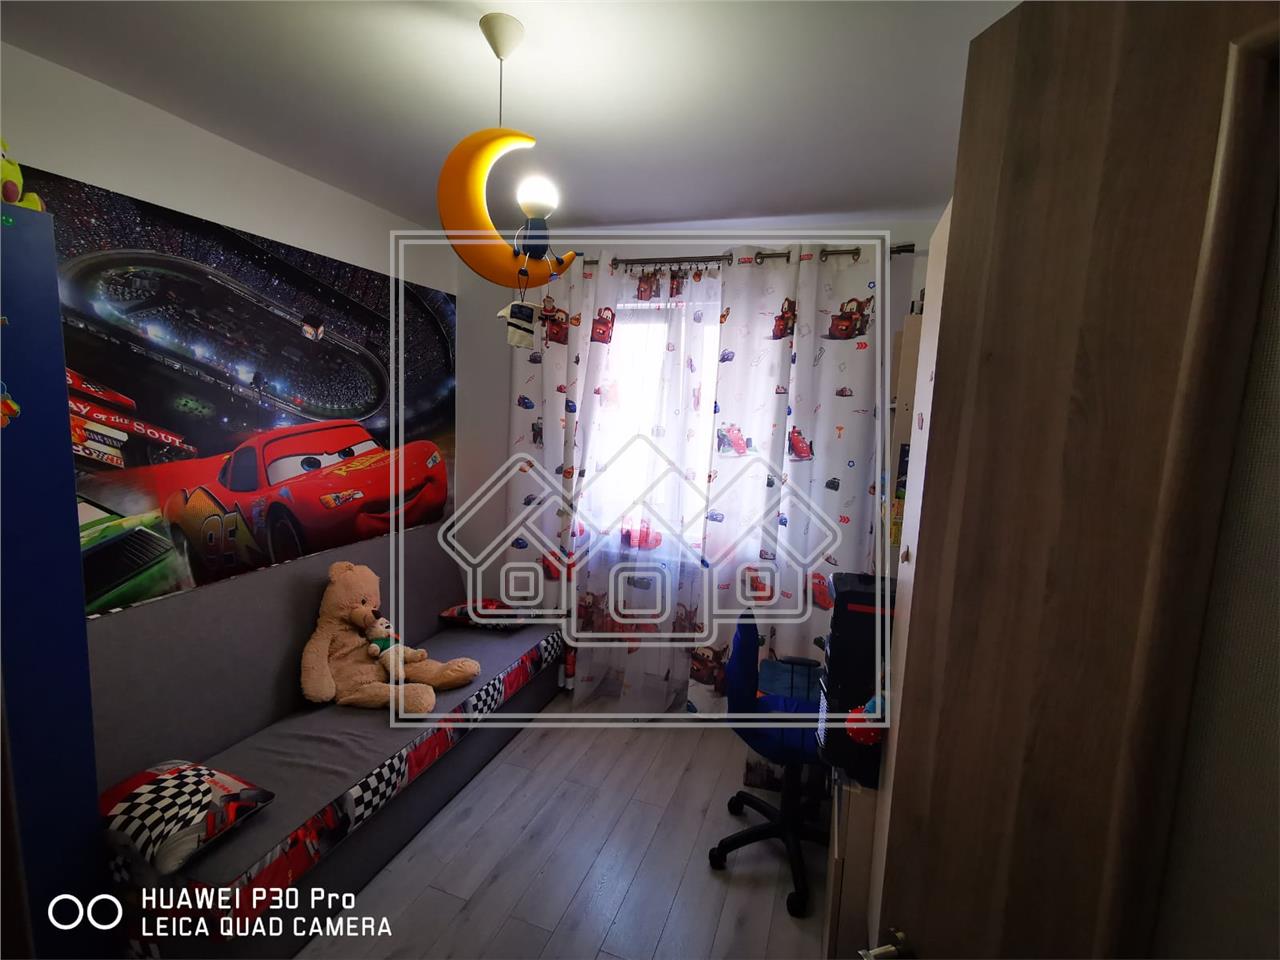 Wohnung zu verkaufen in Sibiu - 3 Zimmer, 1 St, Balkon - Vasile Aaron